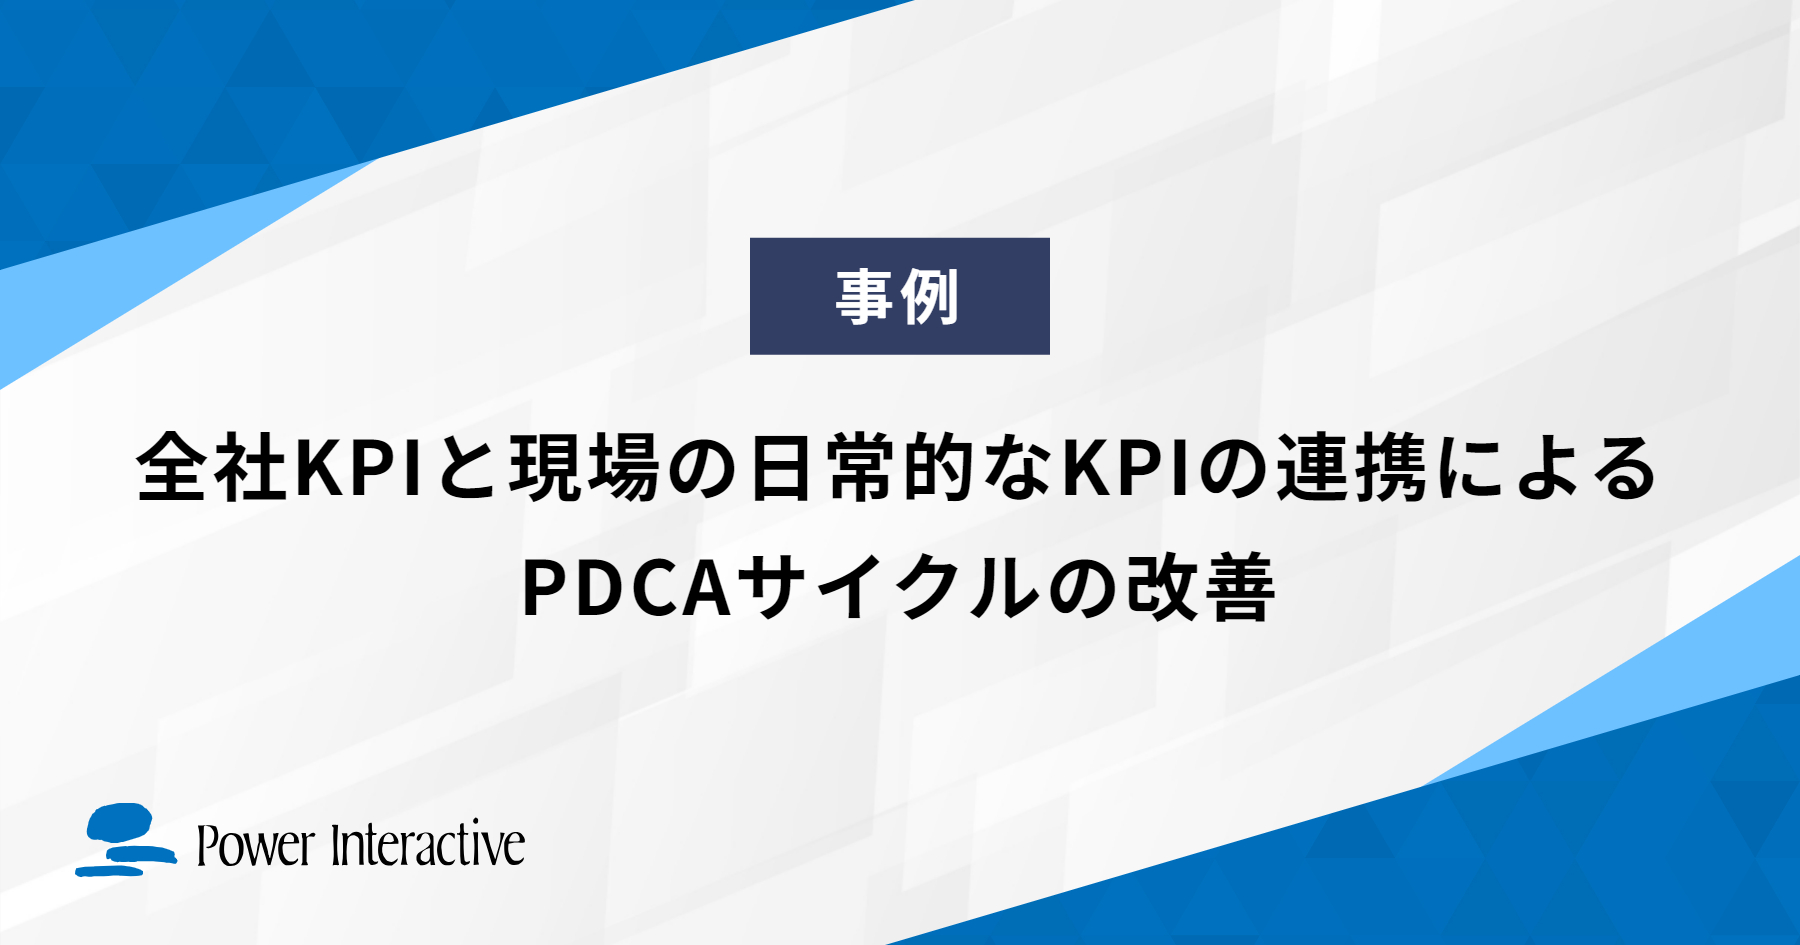 全社KPIと現場の日常的なKPIの連携によるPDCAサイクルの改善